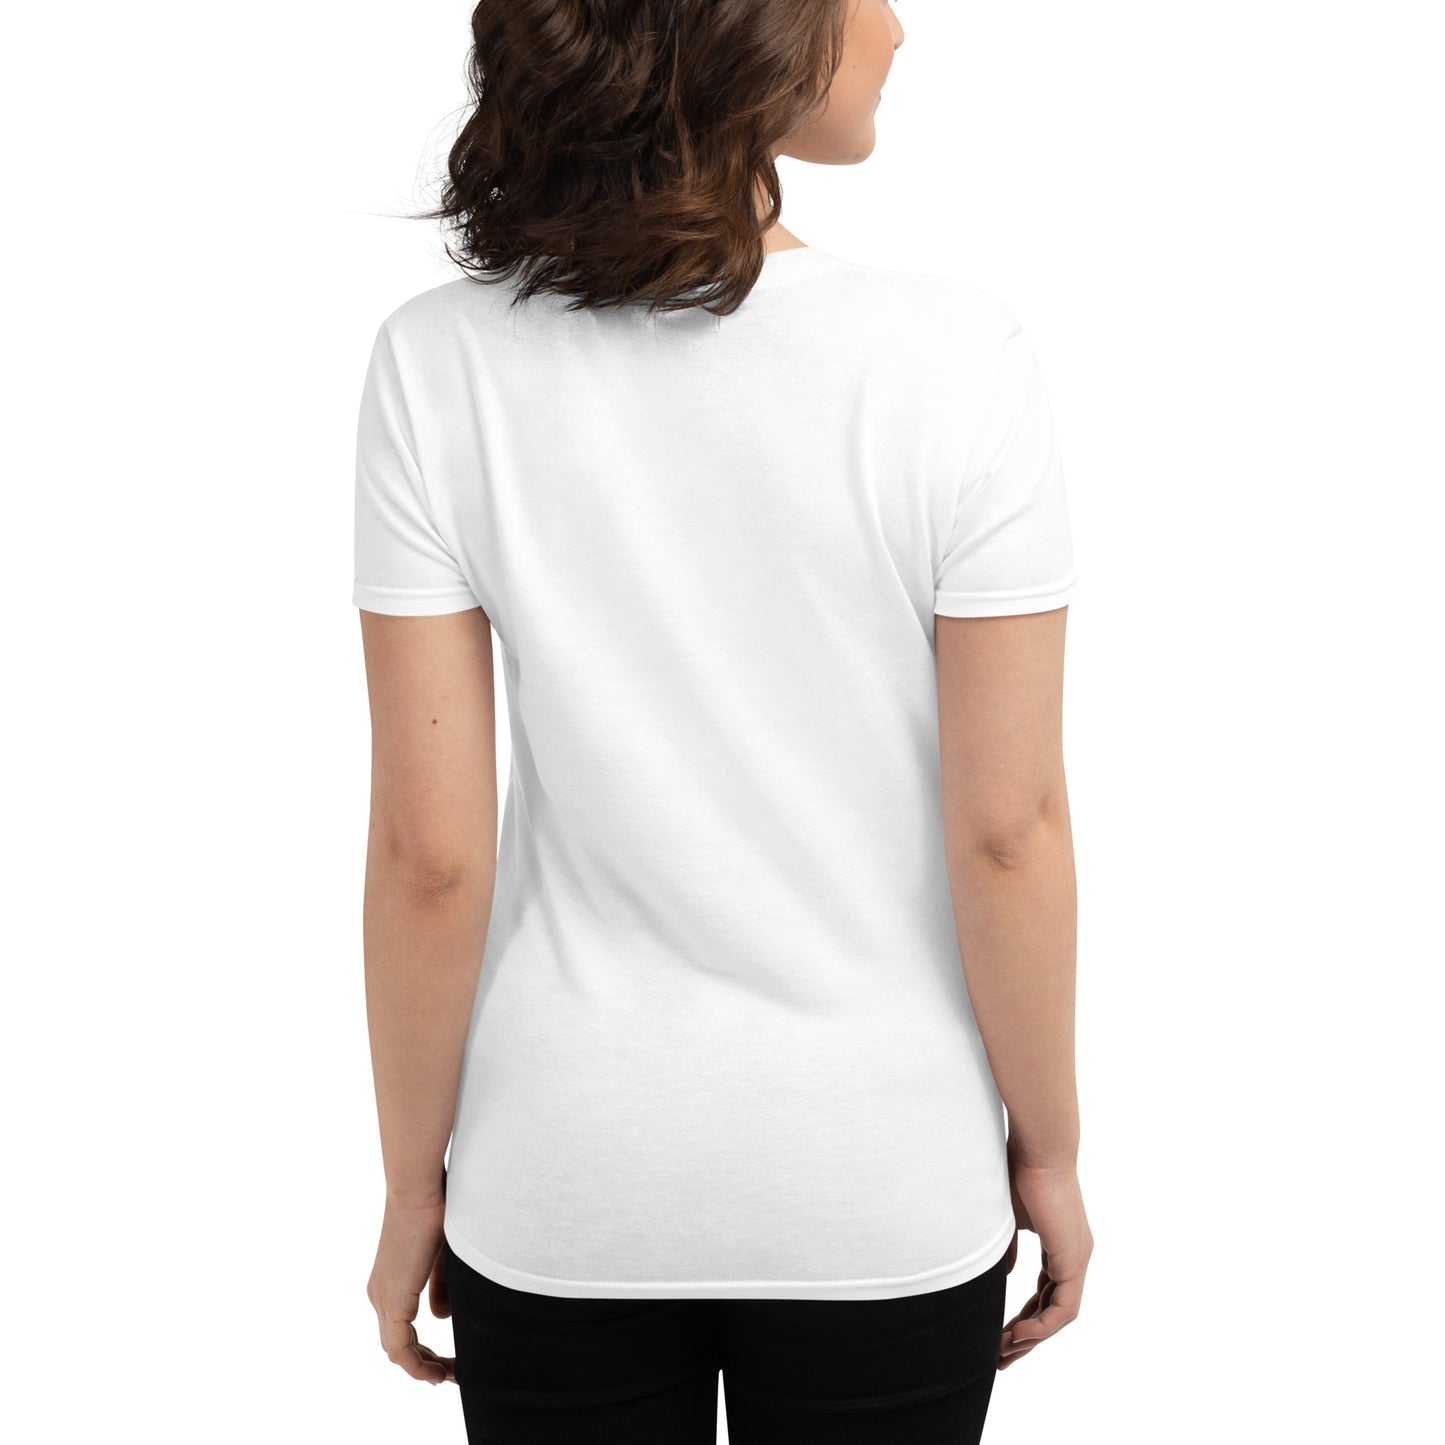 Women's short sleeve t-shirt For Lisa